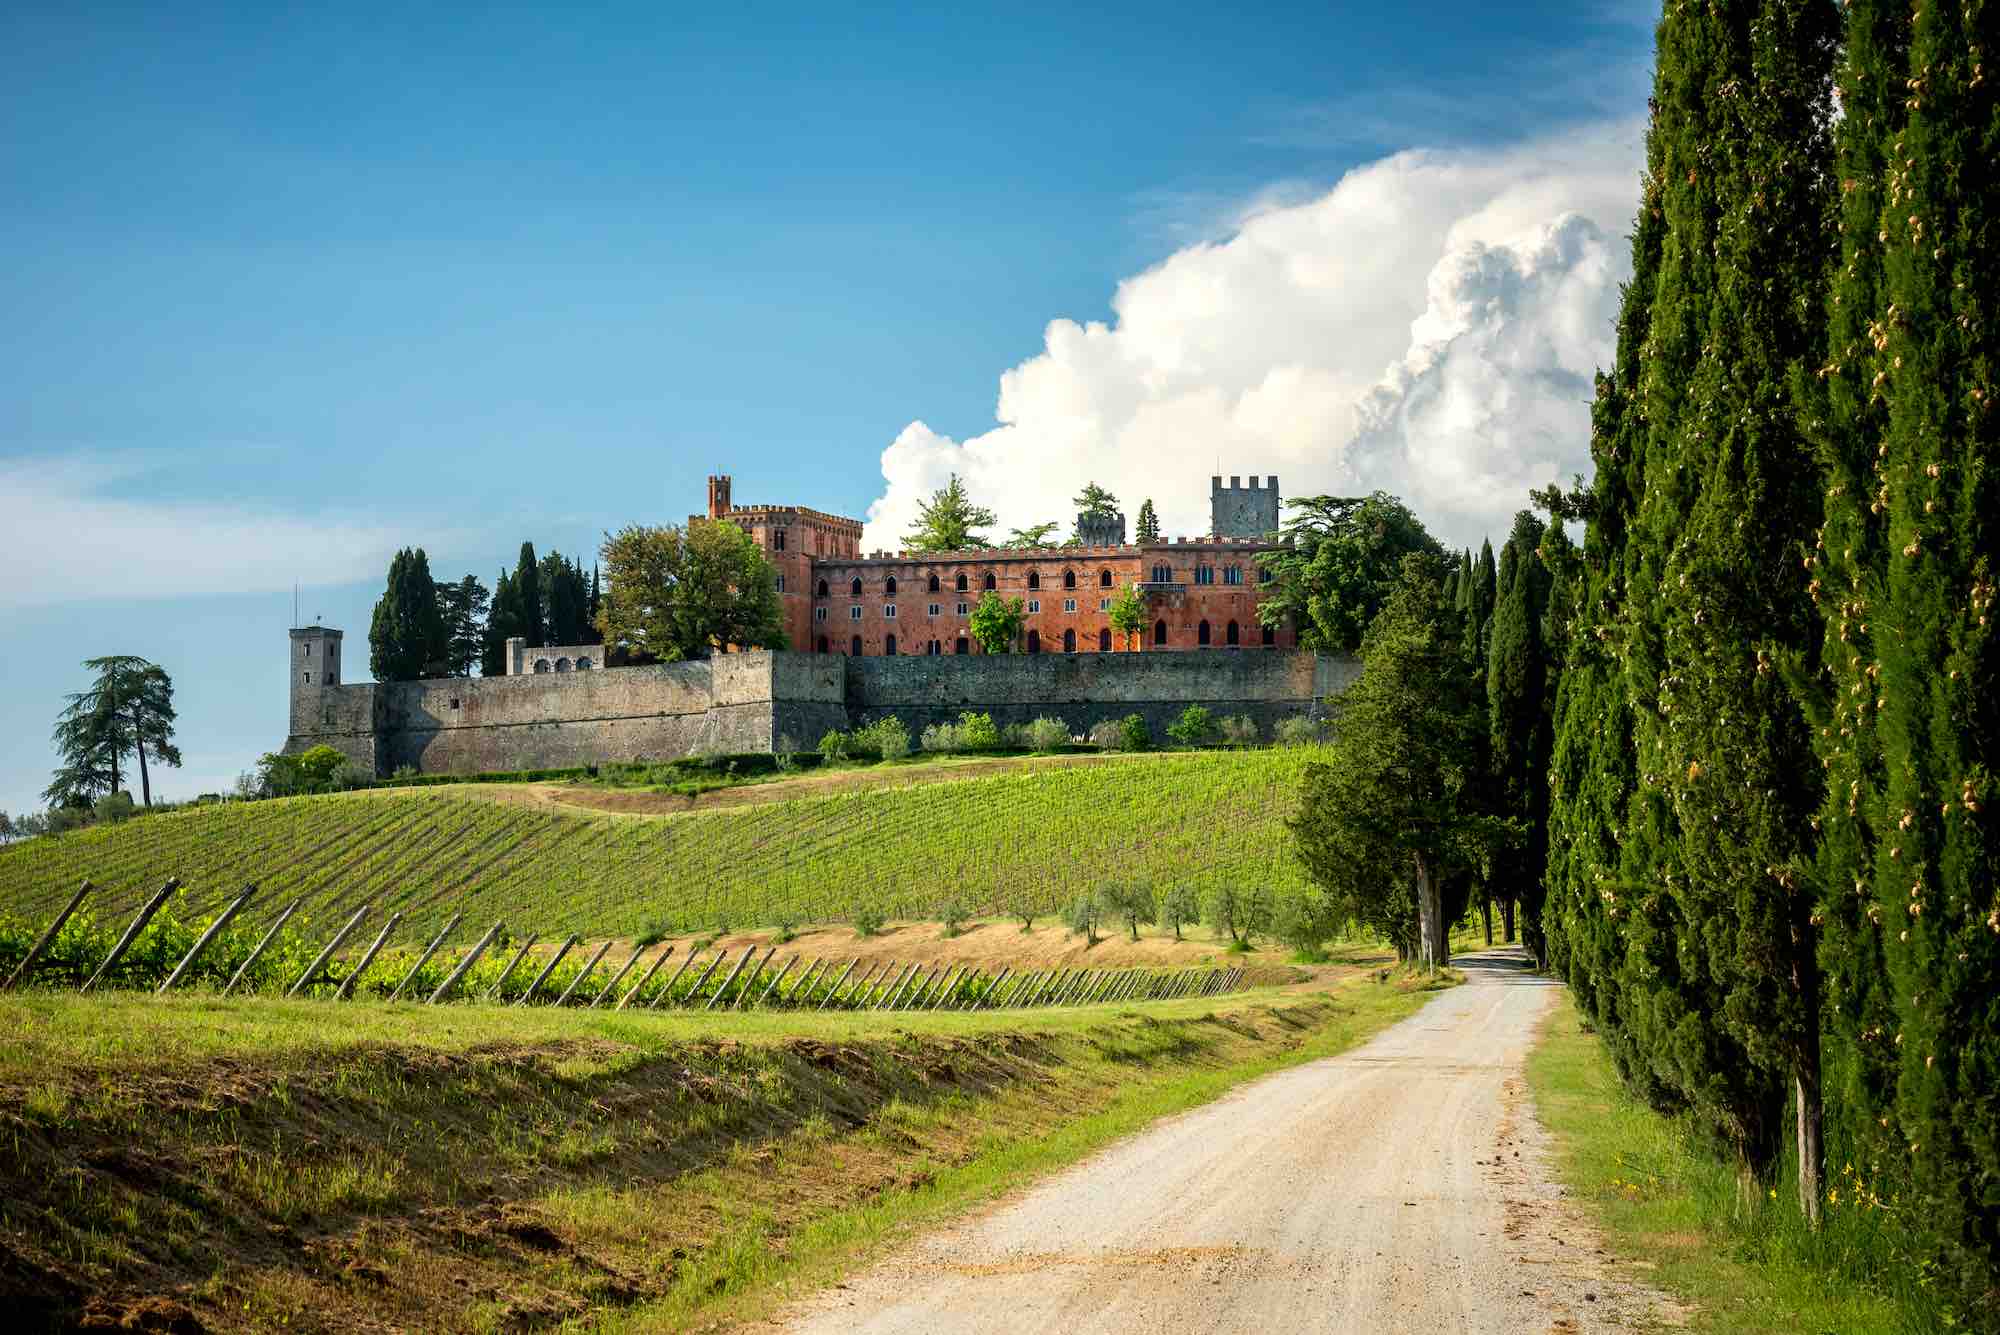 Il Castello di Brolio è una delle migliori cantine per degustazioni di vini nel Chianti Classico